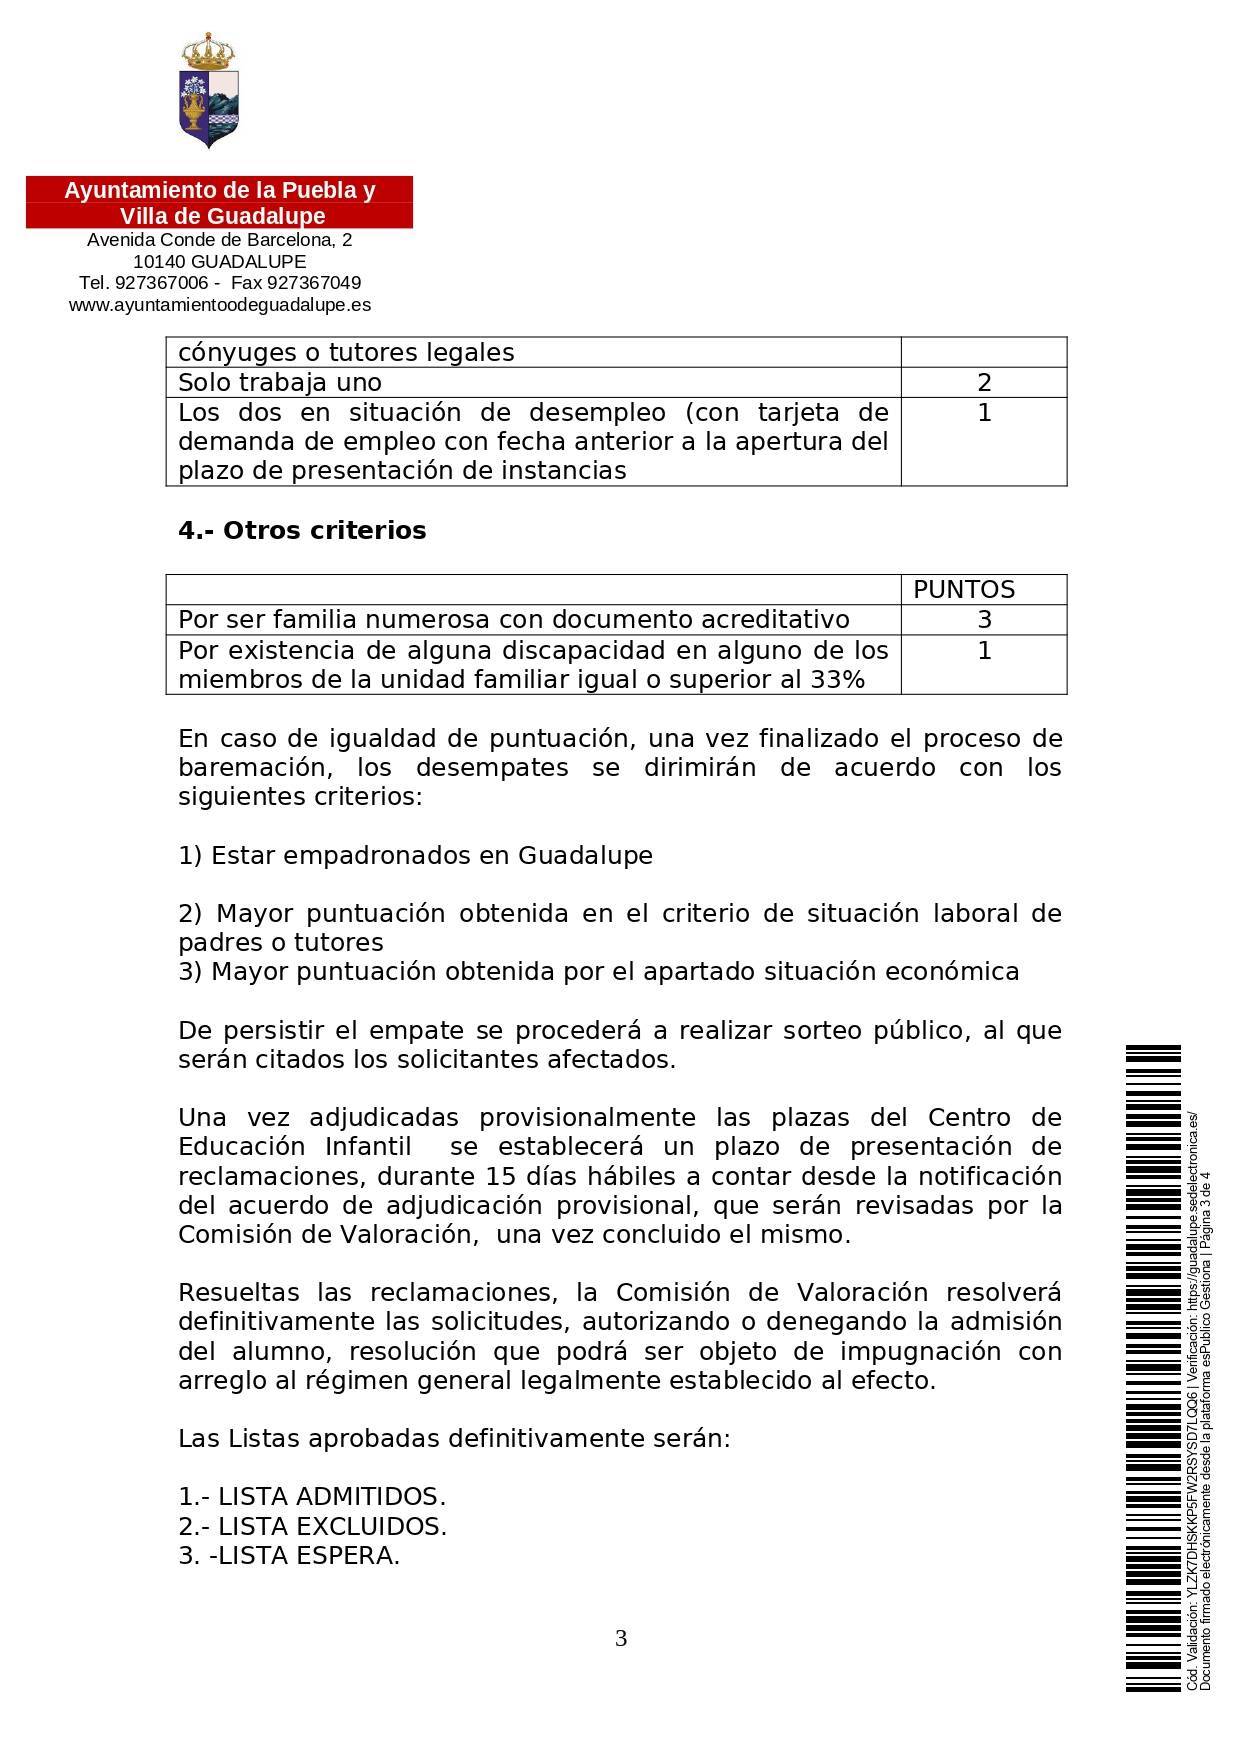 Abierto el plazo de matriculación para la guardería (2021) - Guadalupe (Cáceres) 4